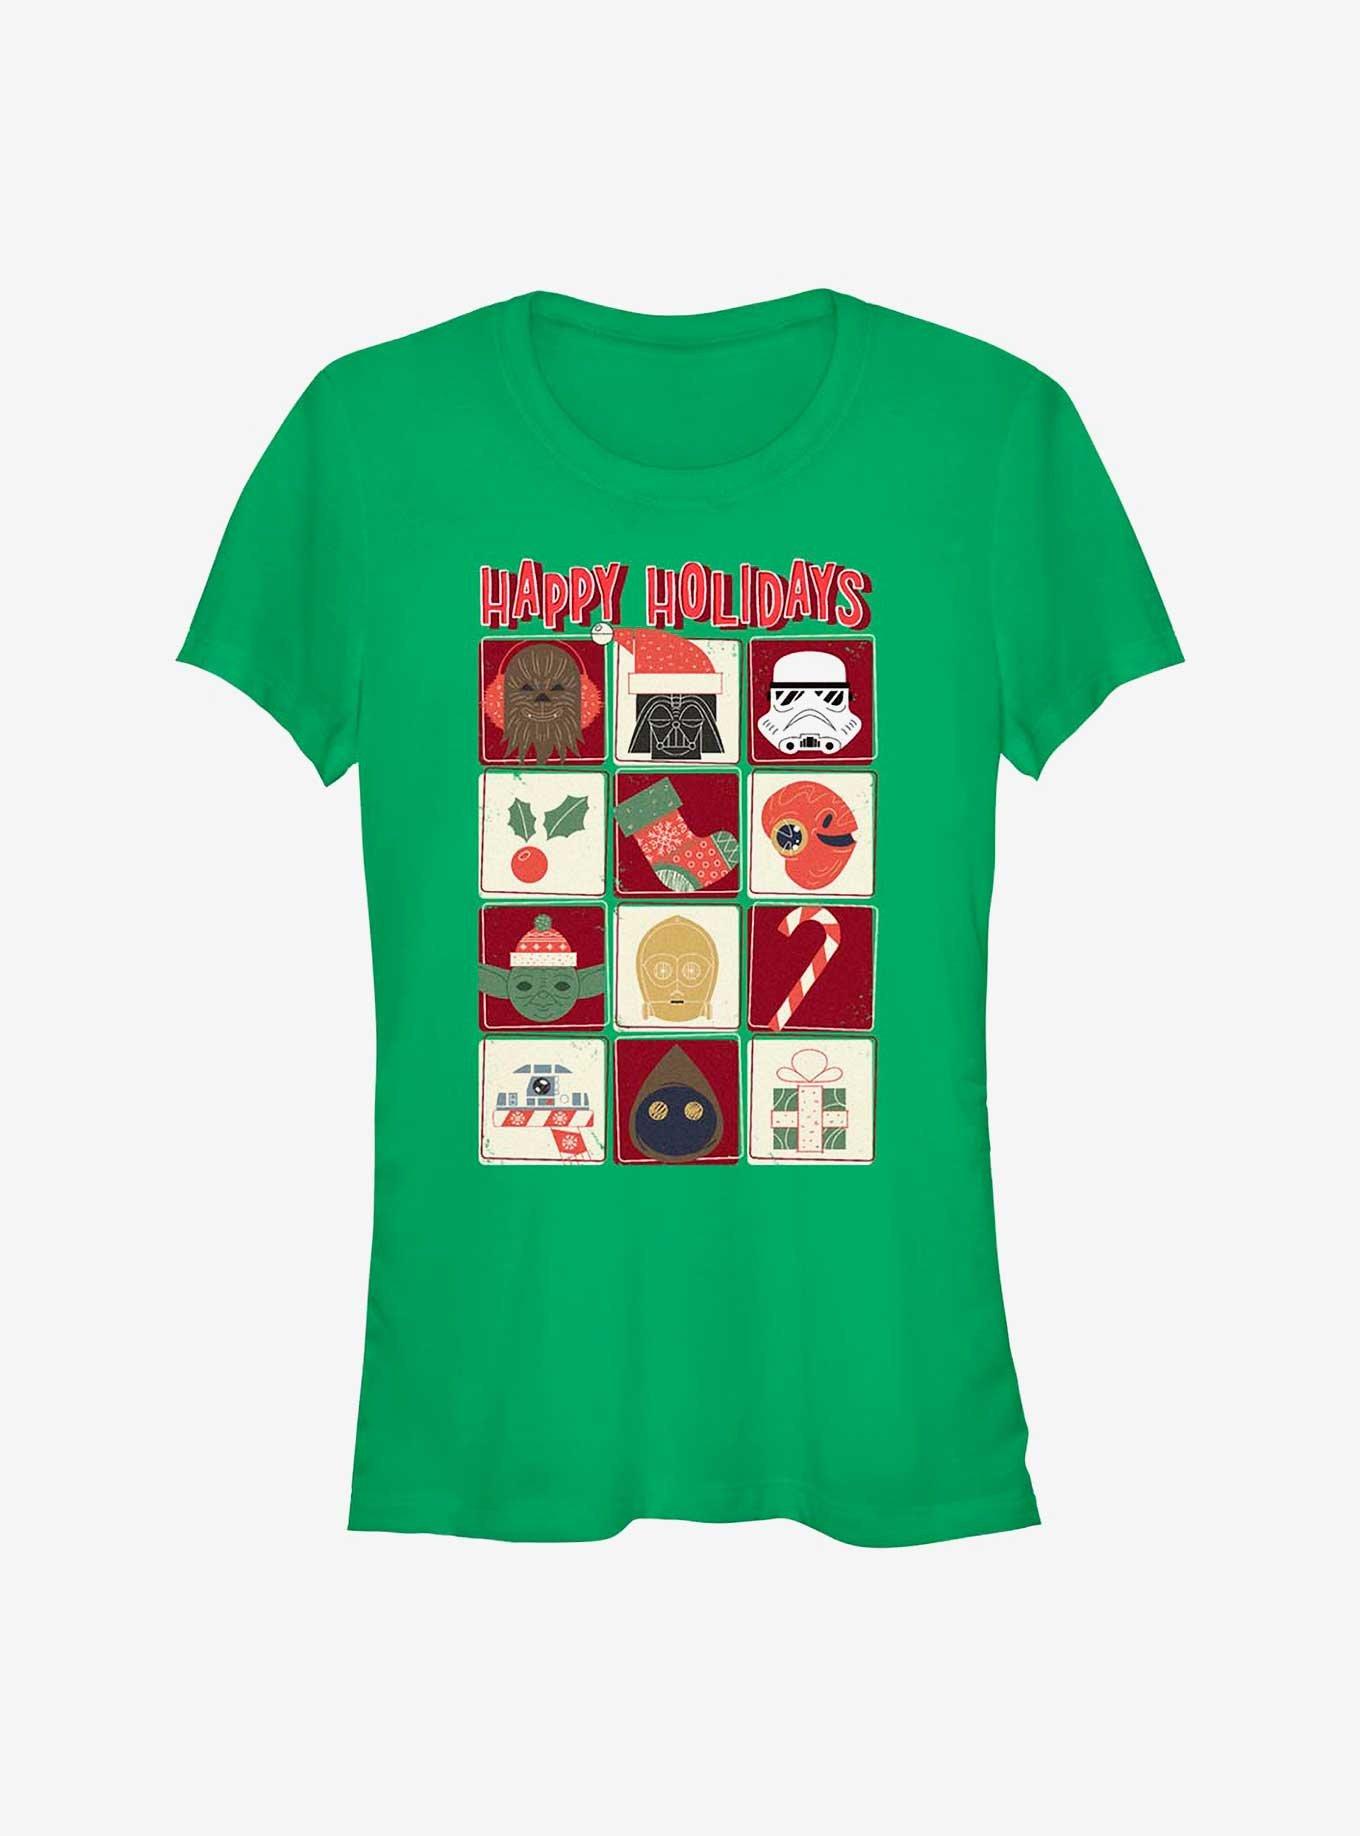 Star Wars Holiday Icons Girls T-Shirt, KELLY, hi-res